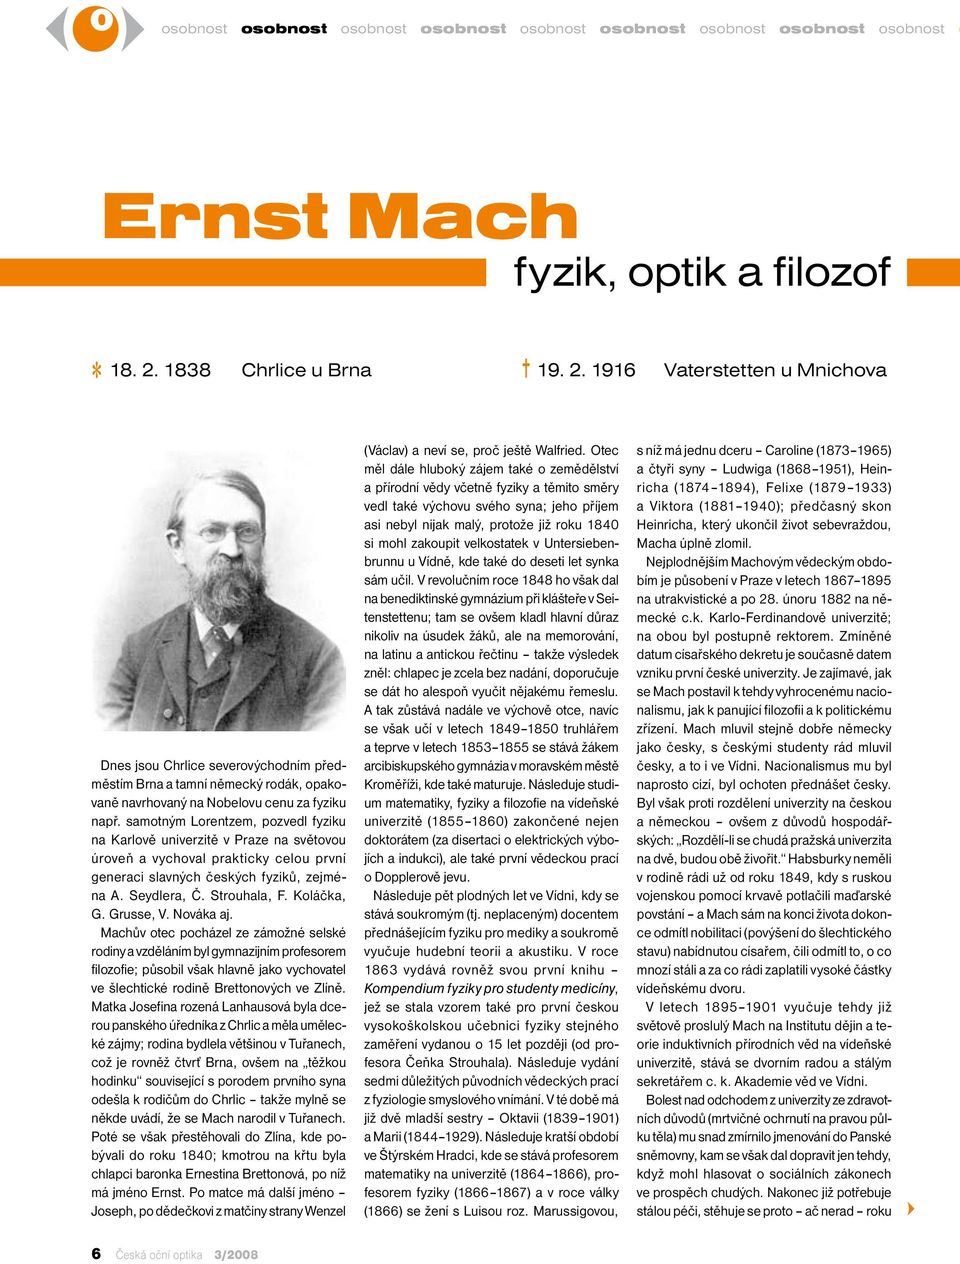 samotným Lorentzem, pozvedl fyziku na Karlově univerzitě v Praze na světovou úroveň a vychoval prakticky celou první generaci slavných českých fyziků, zejména A. Seydlera, Č. Strouhala, F. Koláčka, G.